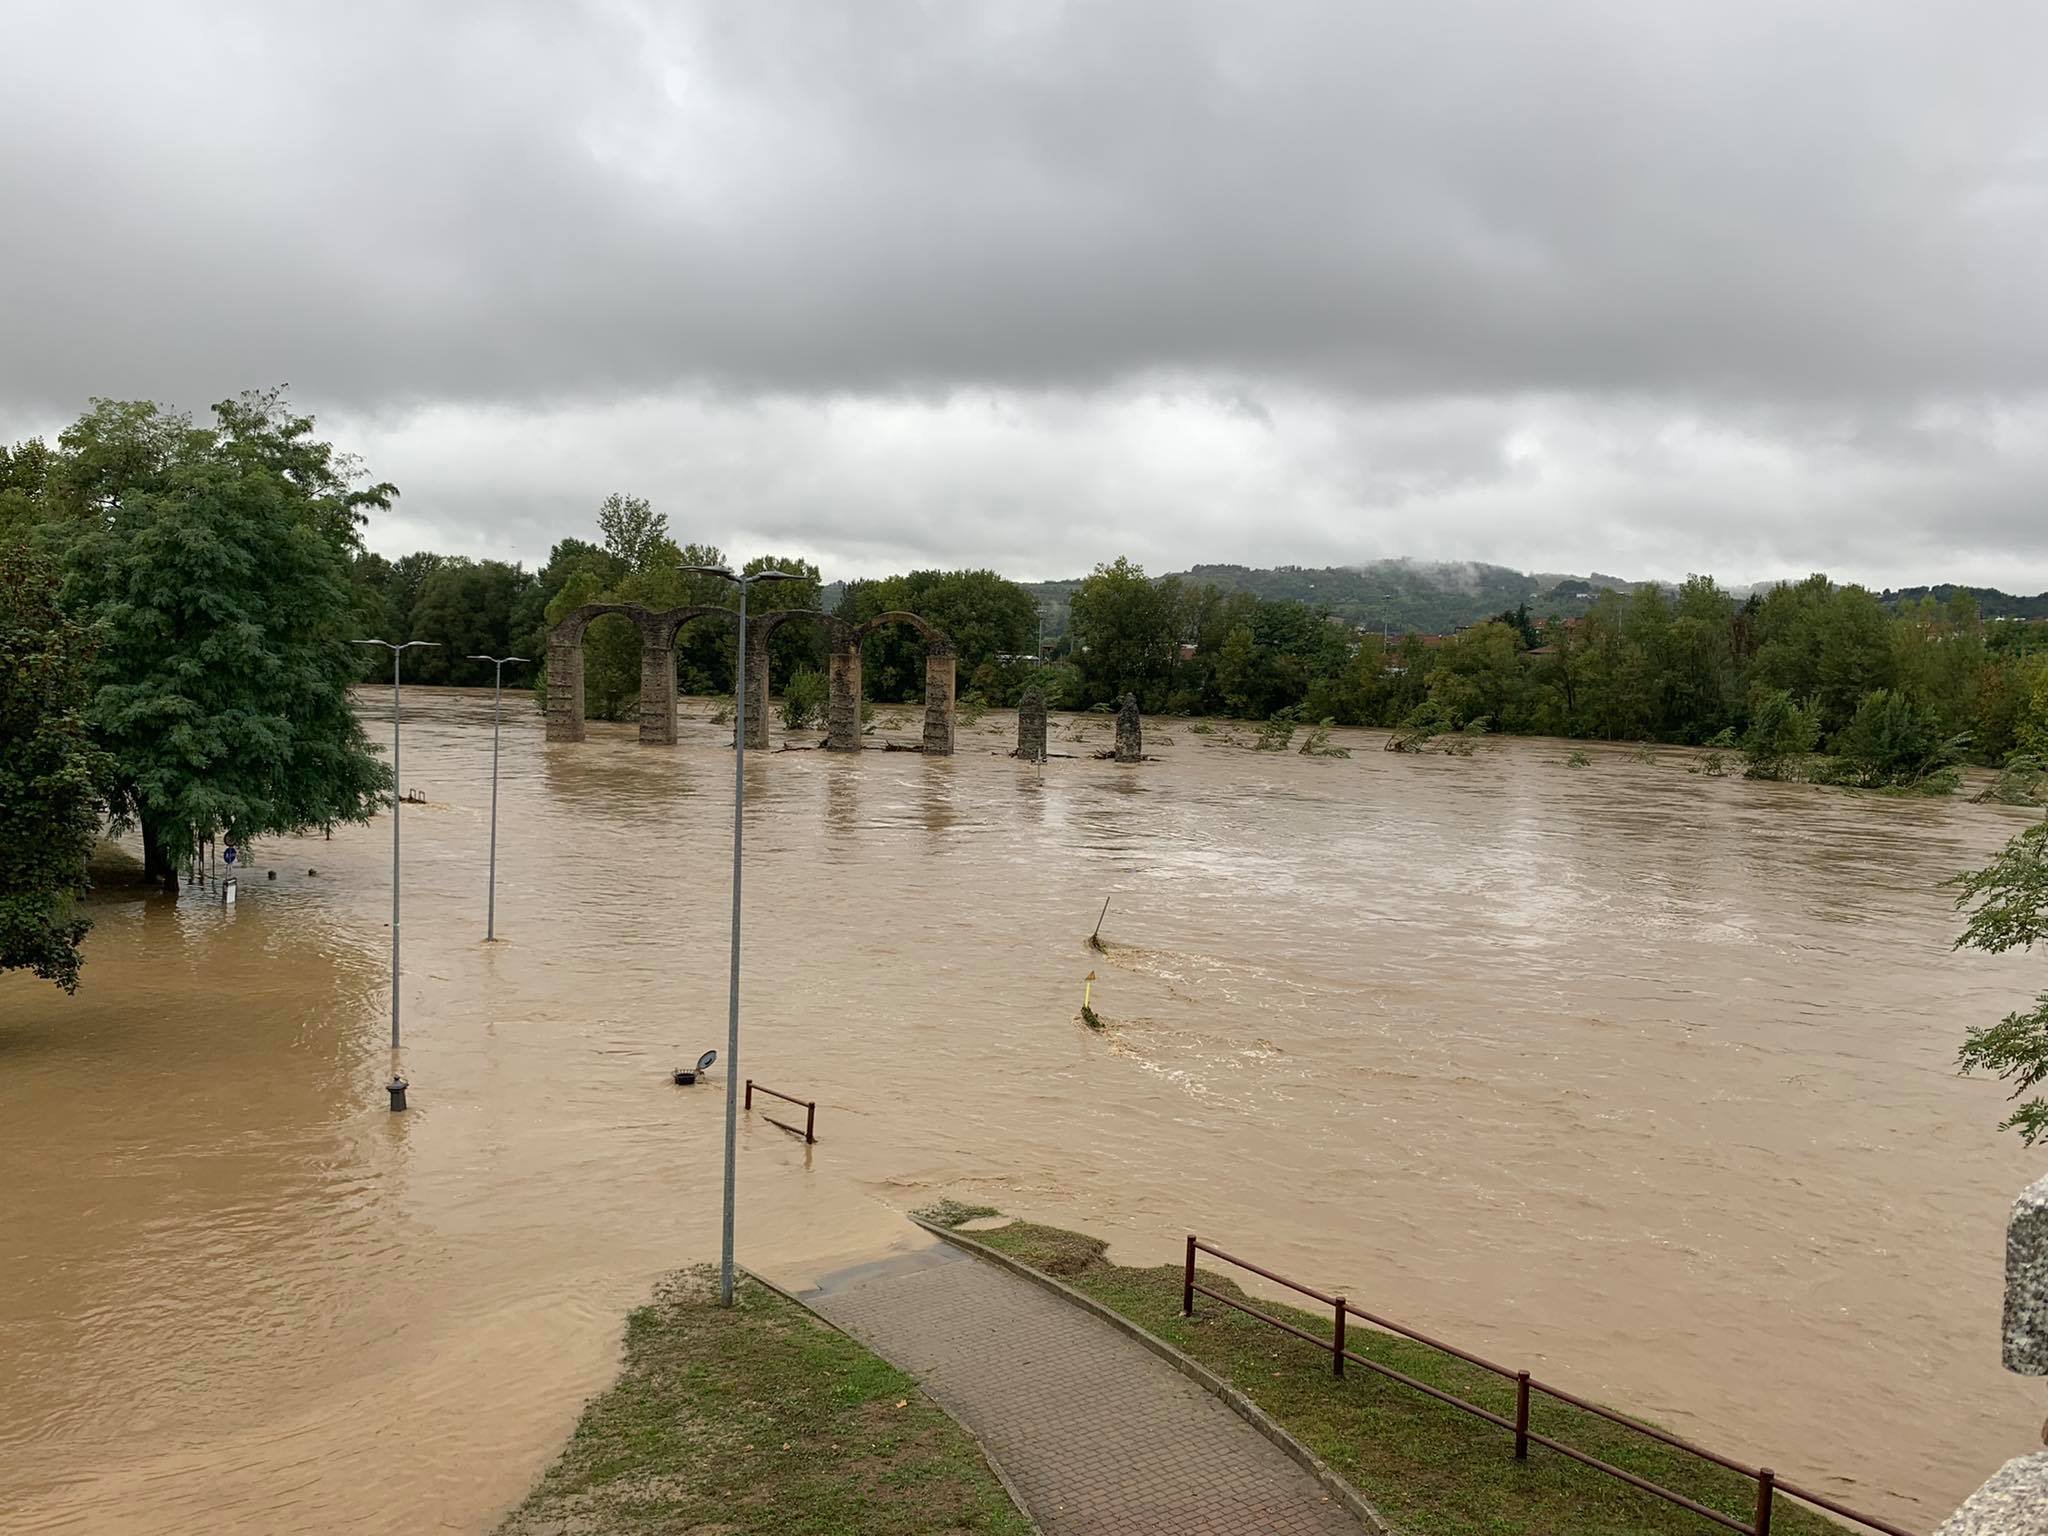 Allerta meteo: la situazione dei fiumi in provincia di Alessandria